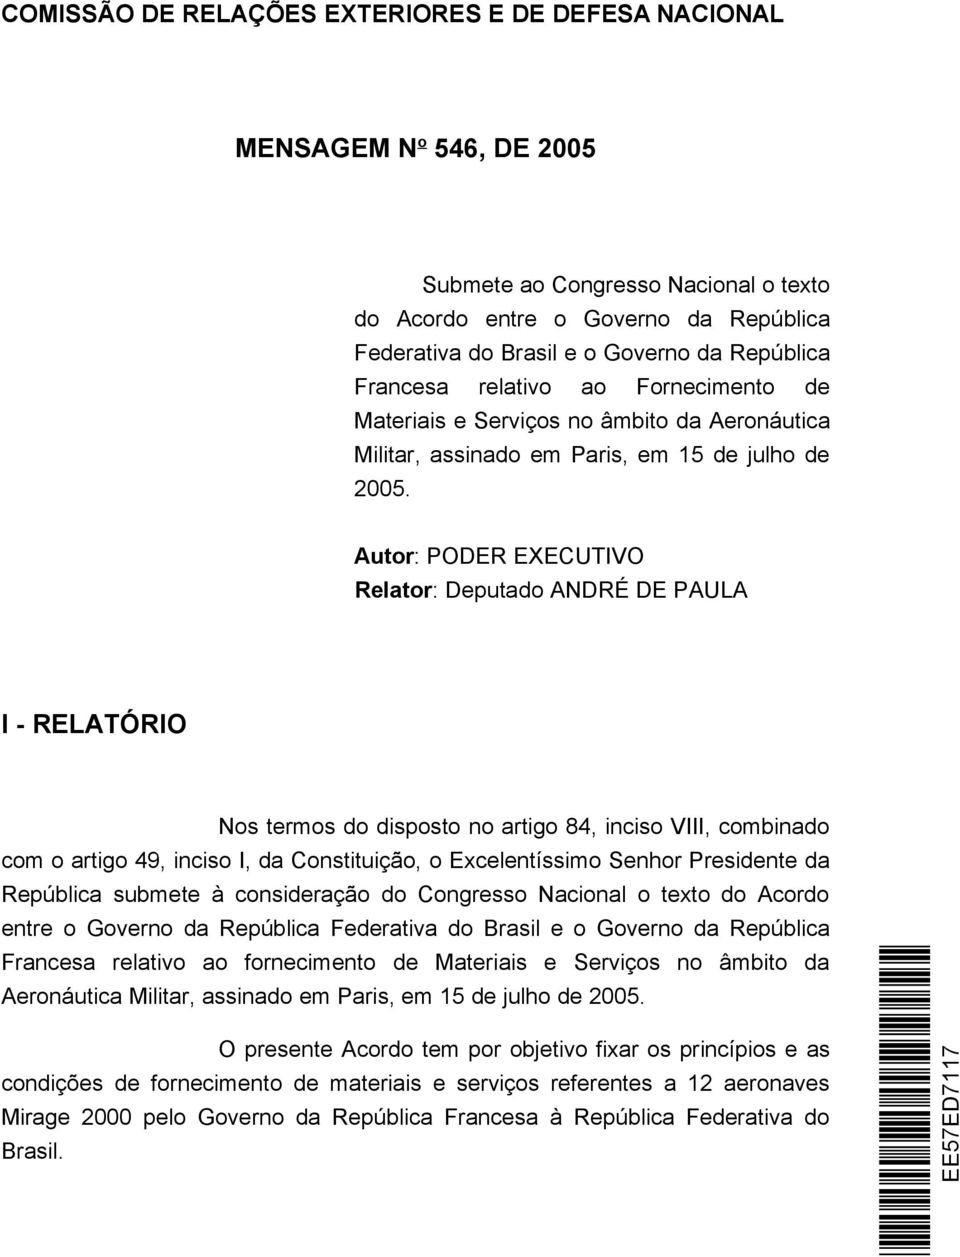 Autor: PODER EXECUTIVO Relator: Deputado ANDRÉ DE PAULA I - RELATÓRIO Nos termos do disposto no artigo 84, inciso VIII, combinado com o artigo 49, inciso I, da Constituição, o Excelentíssimo Senhor